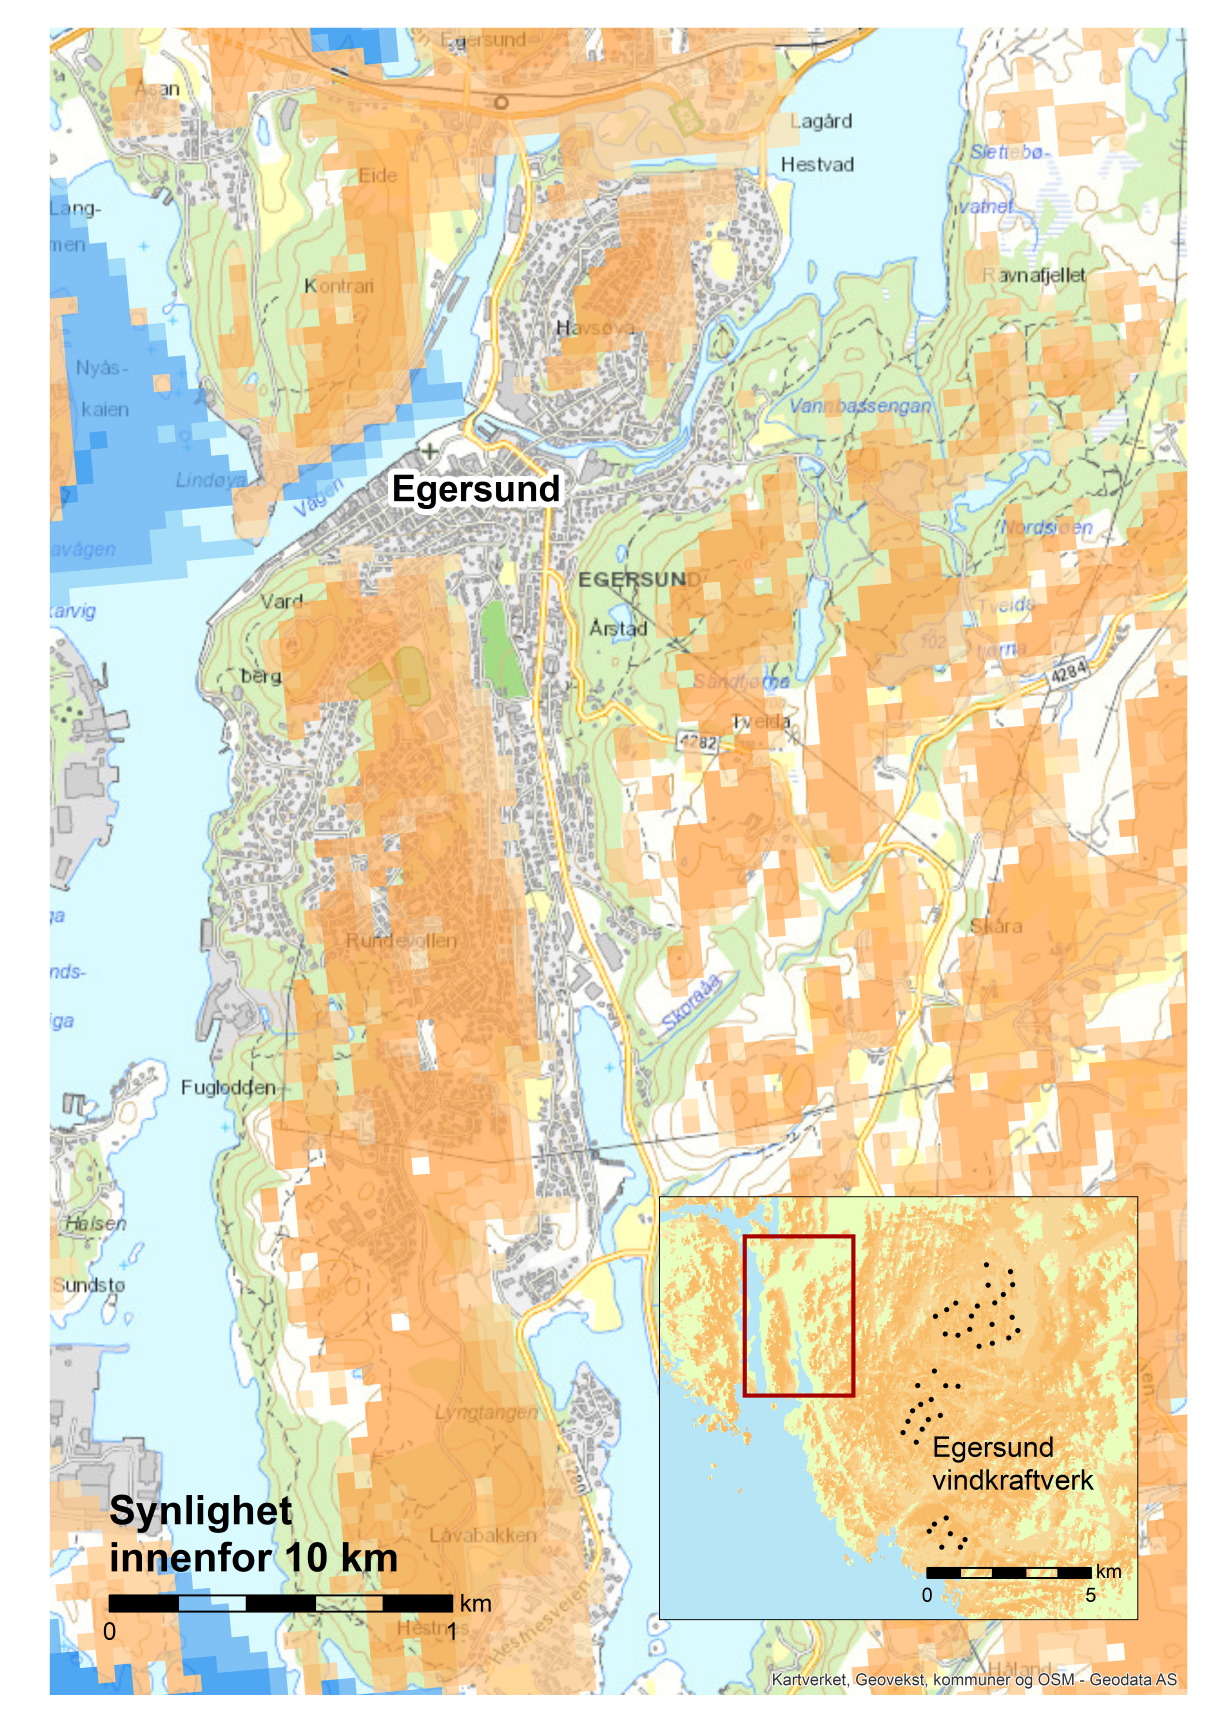 Eksempel på synlighet i tettbebyggelse. Her fra sentrale deler av Egersund mot Egersund vindkraftverk, som ligger øst for sentrum. Kilde: Miljødirektoratet